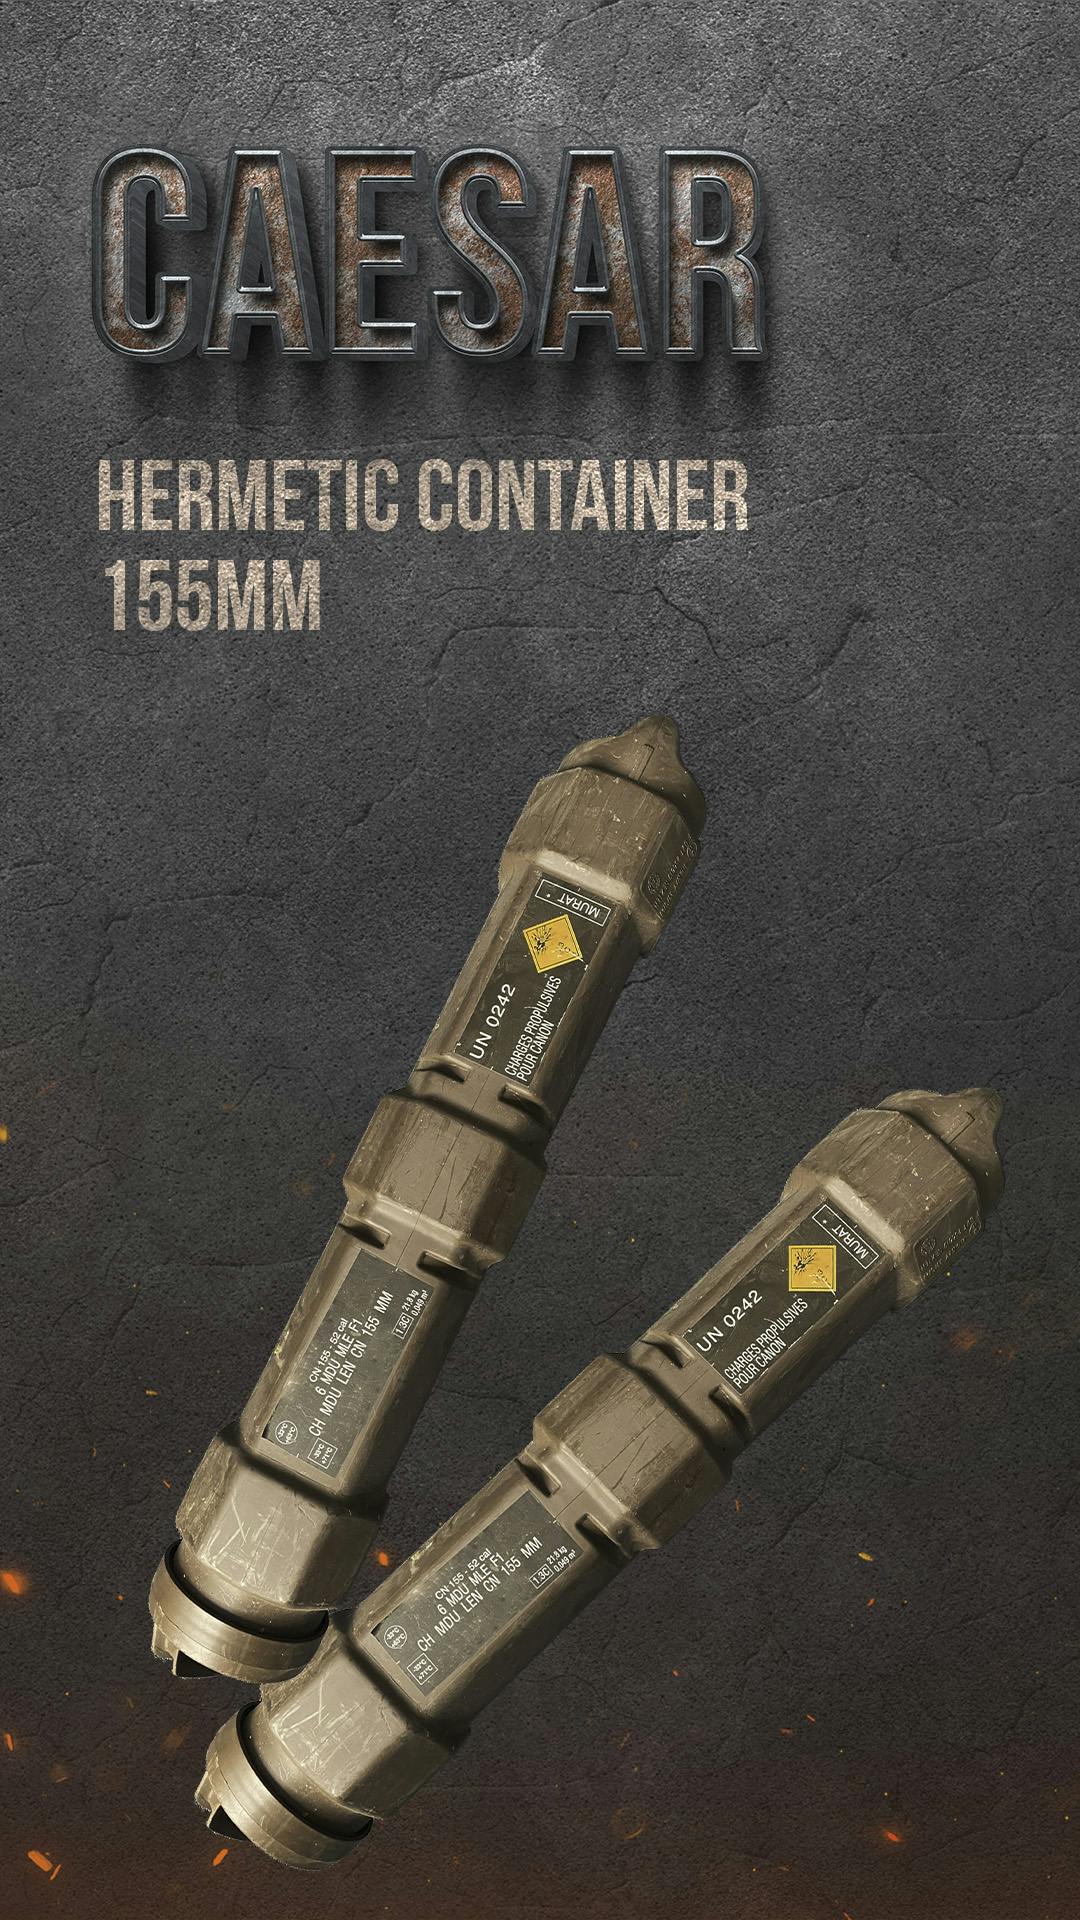 Caesar (155mm) hermetic container